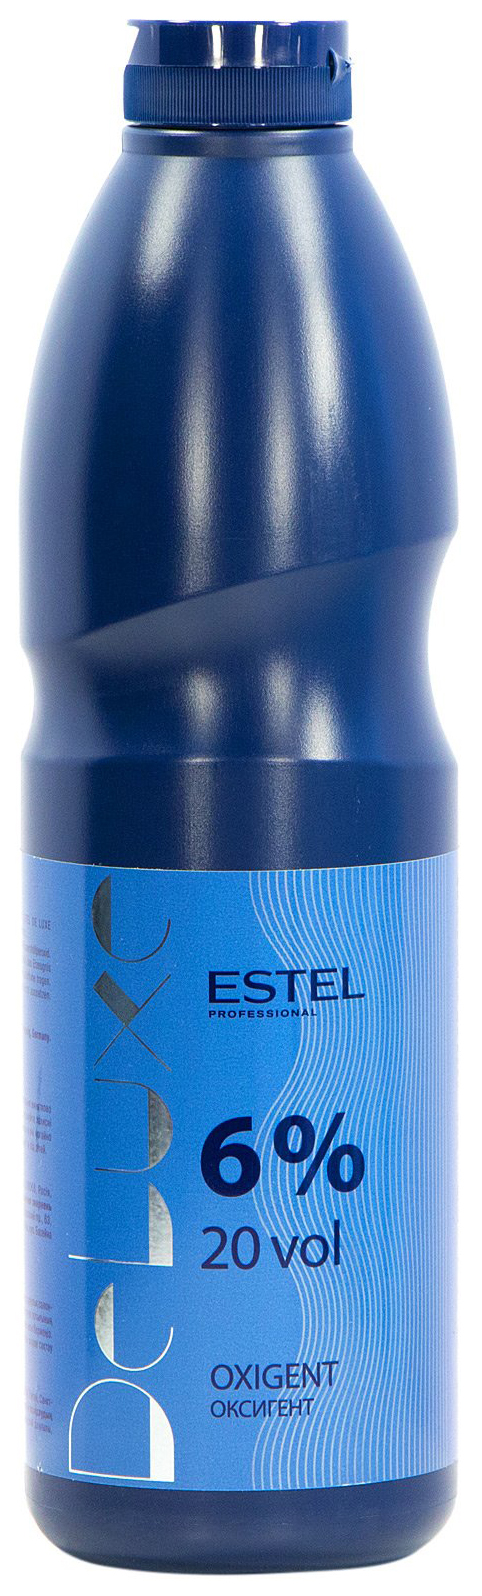 Проявитель Estel Professional De Luxe Oxigent 6% 900 мл estel professional набор для химической завивки для окрашенных волос 2 100 мл